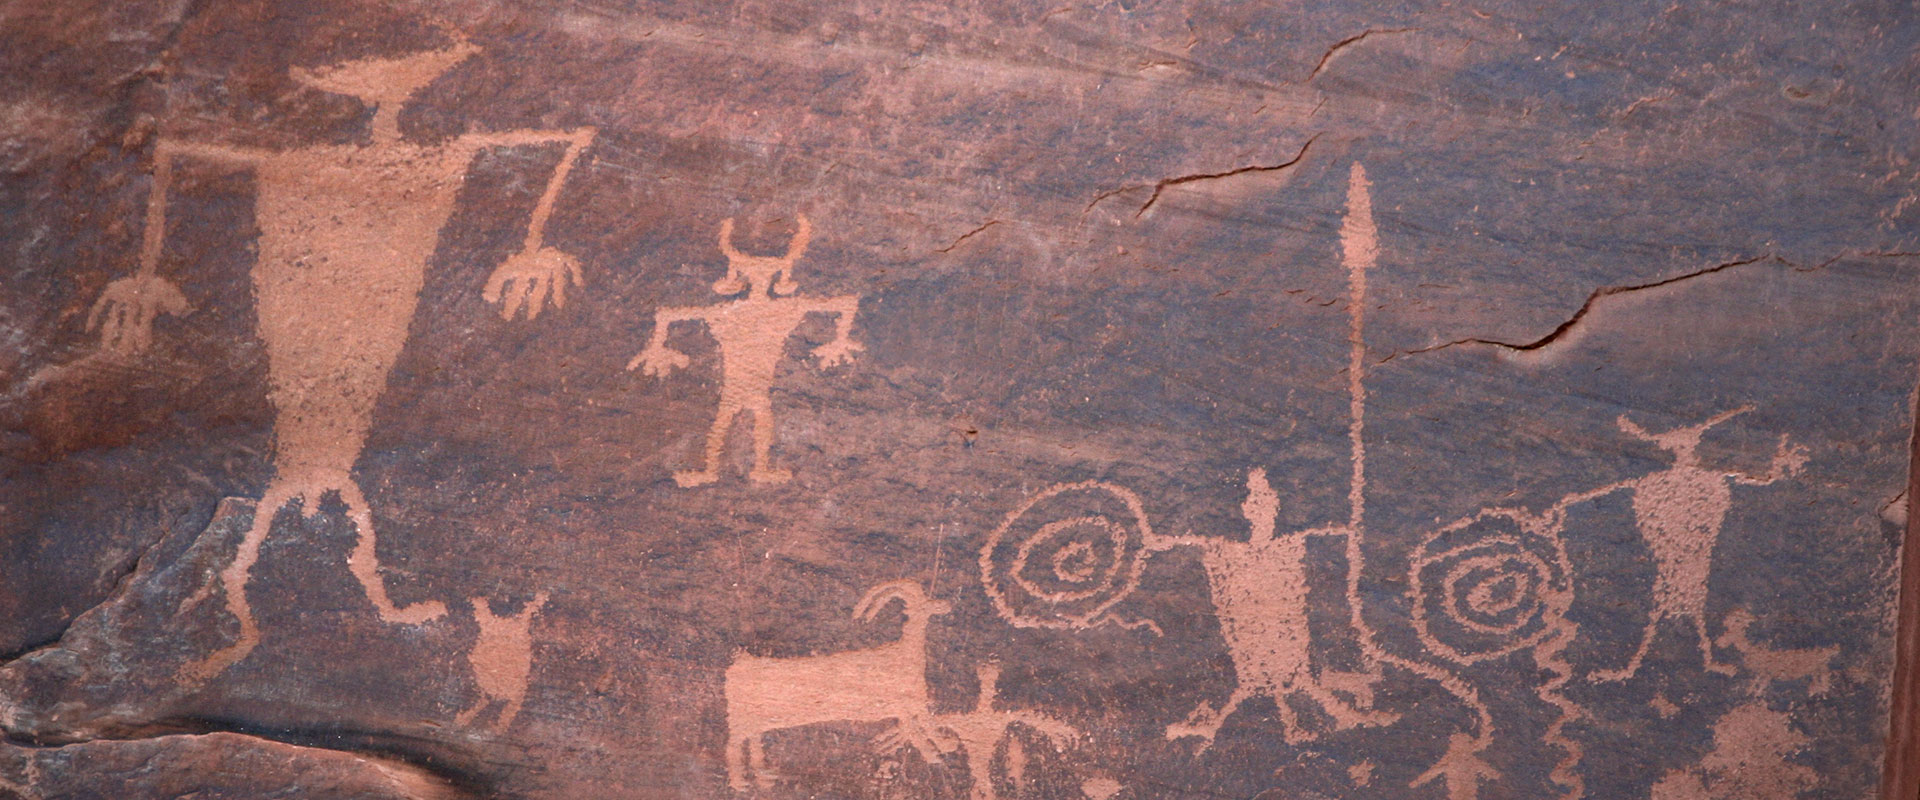 native american cave art symbols